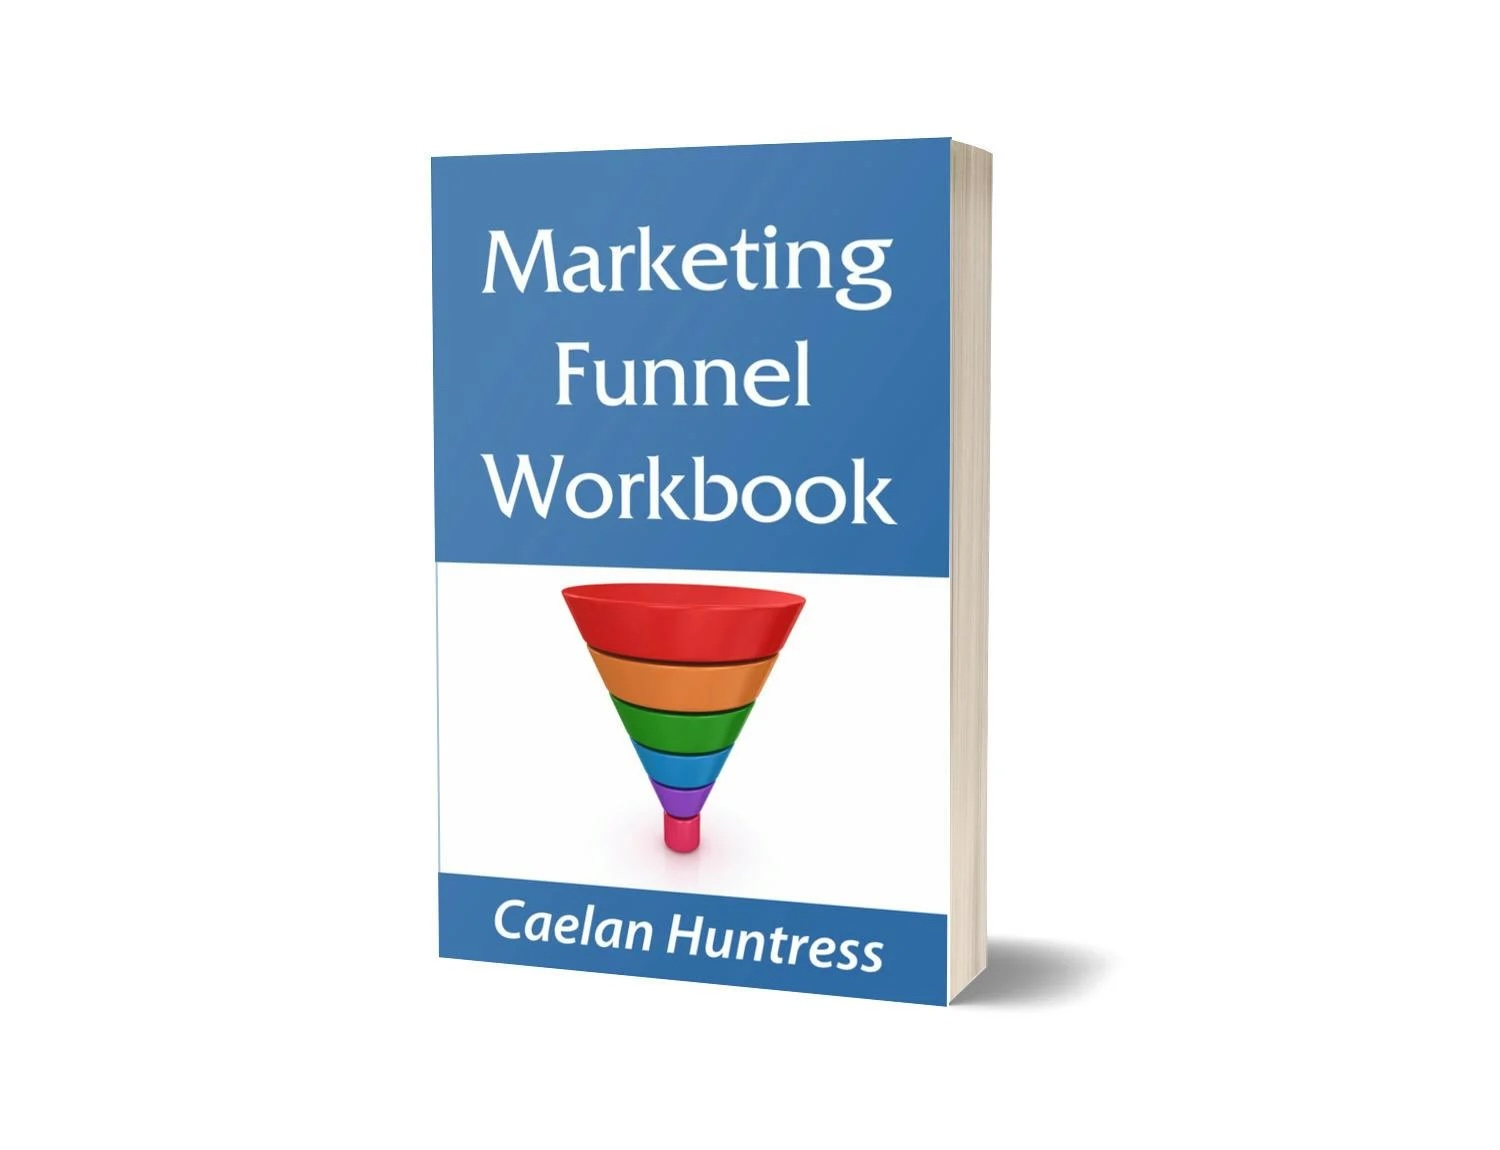 Marketing Funnel Workbook